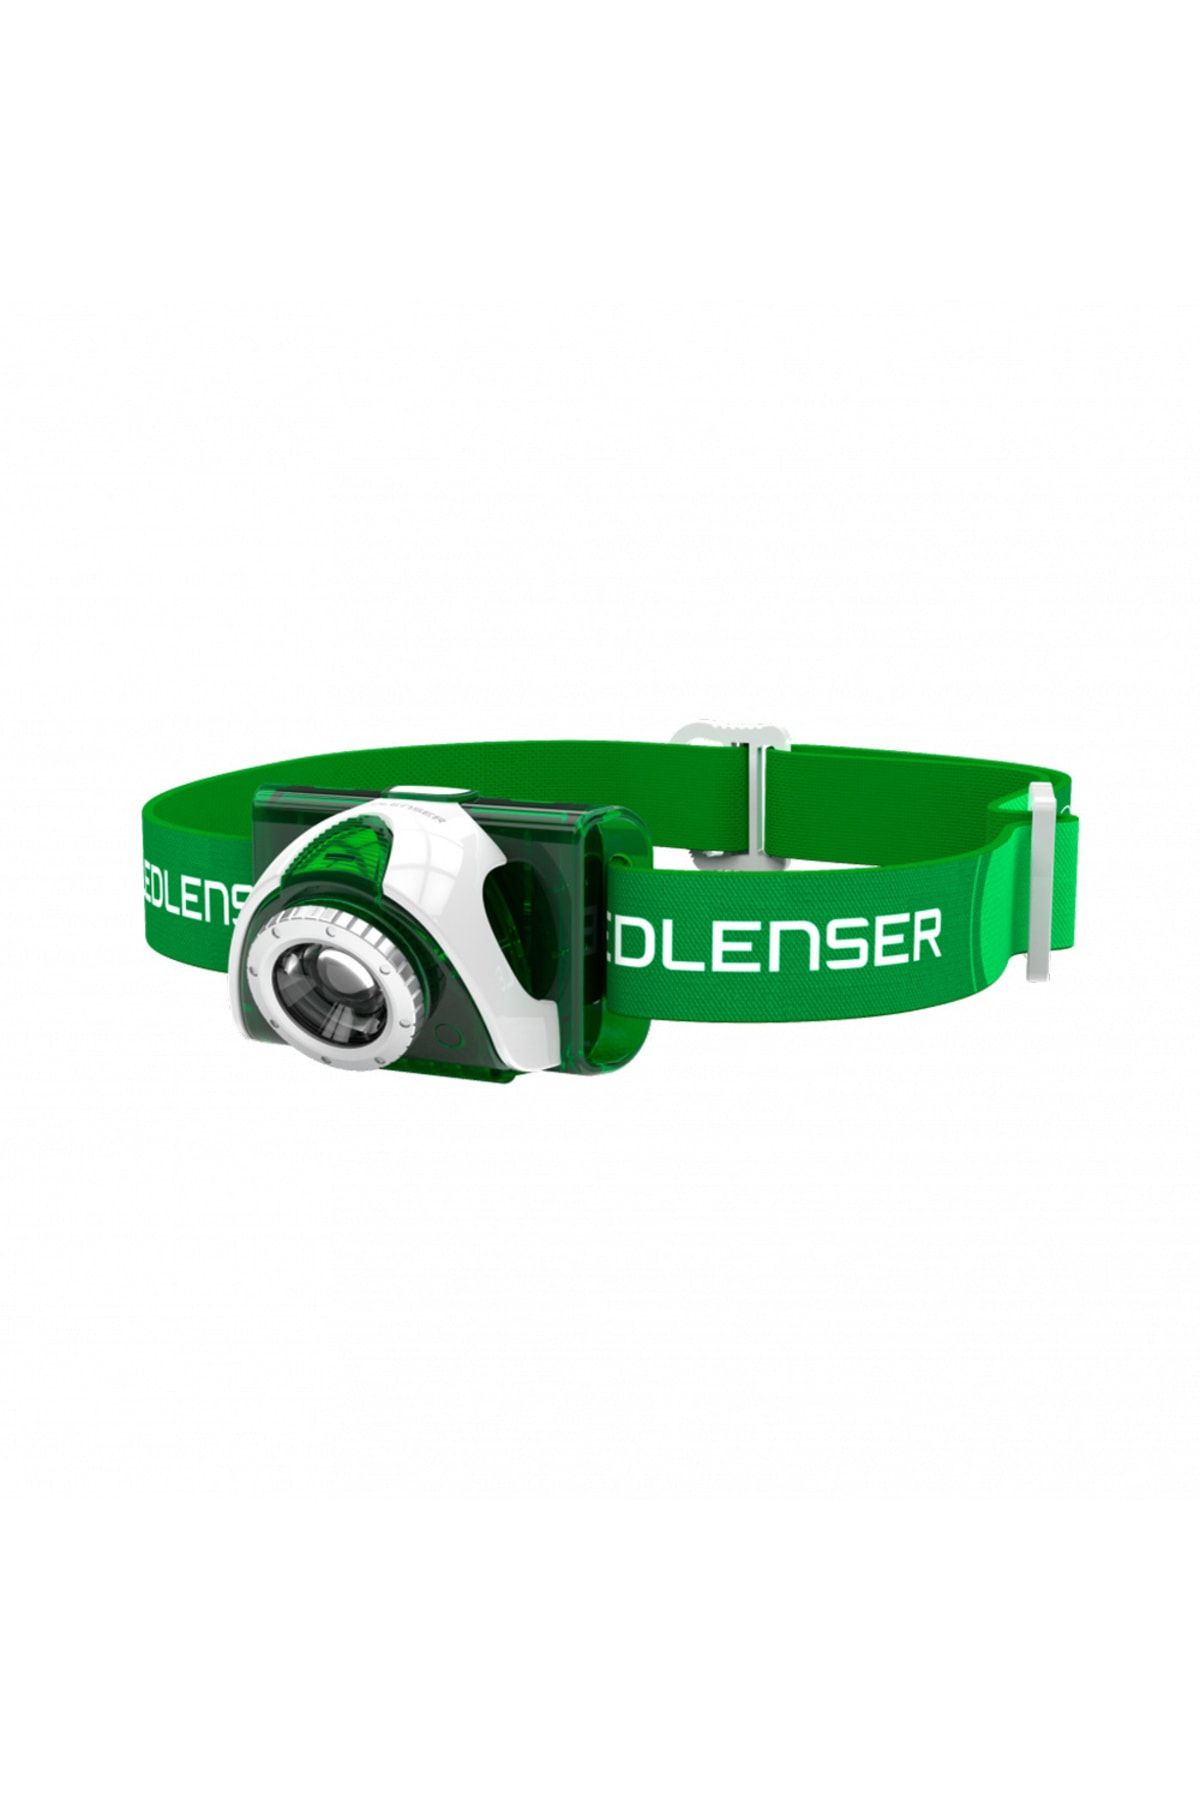 Led Lenser Seo3 Green